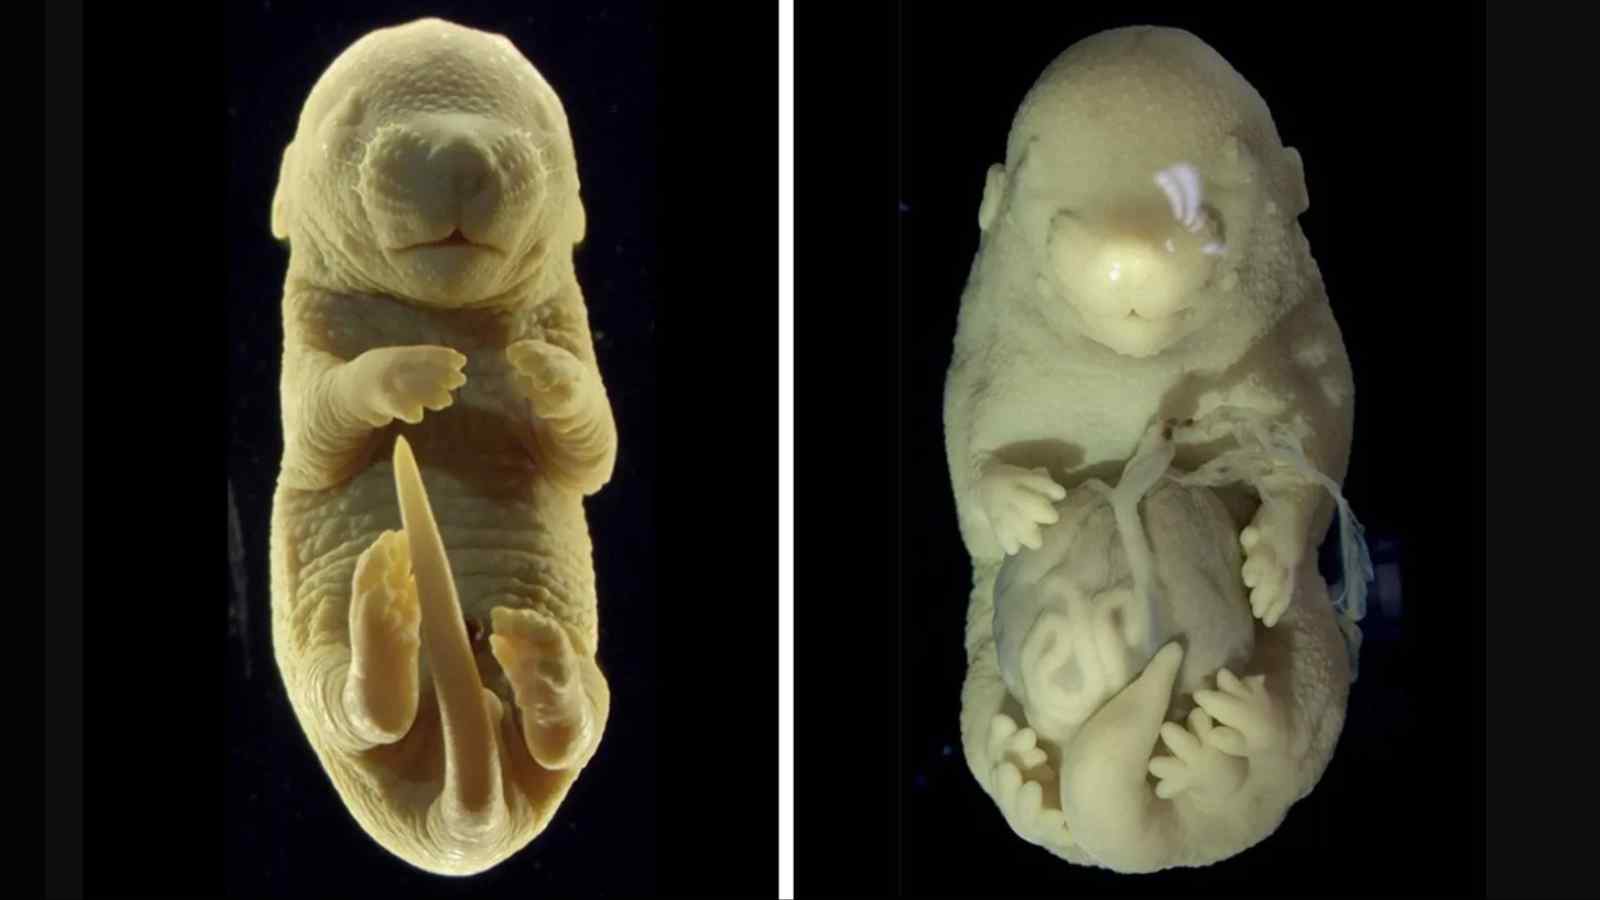 Il raffronto visivo tra un embrione di topo normale e il topo a sei zampe creato in laboratorio con la proteina Tgfbr1